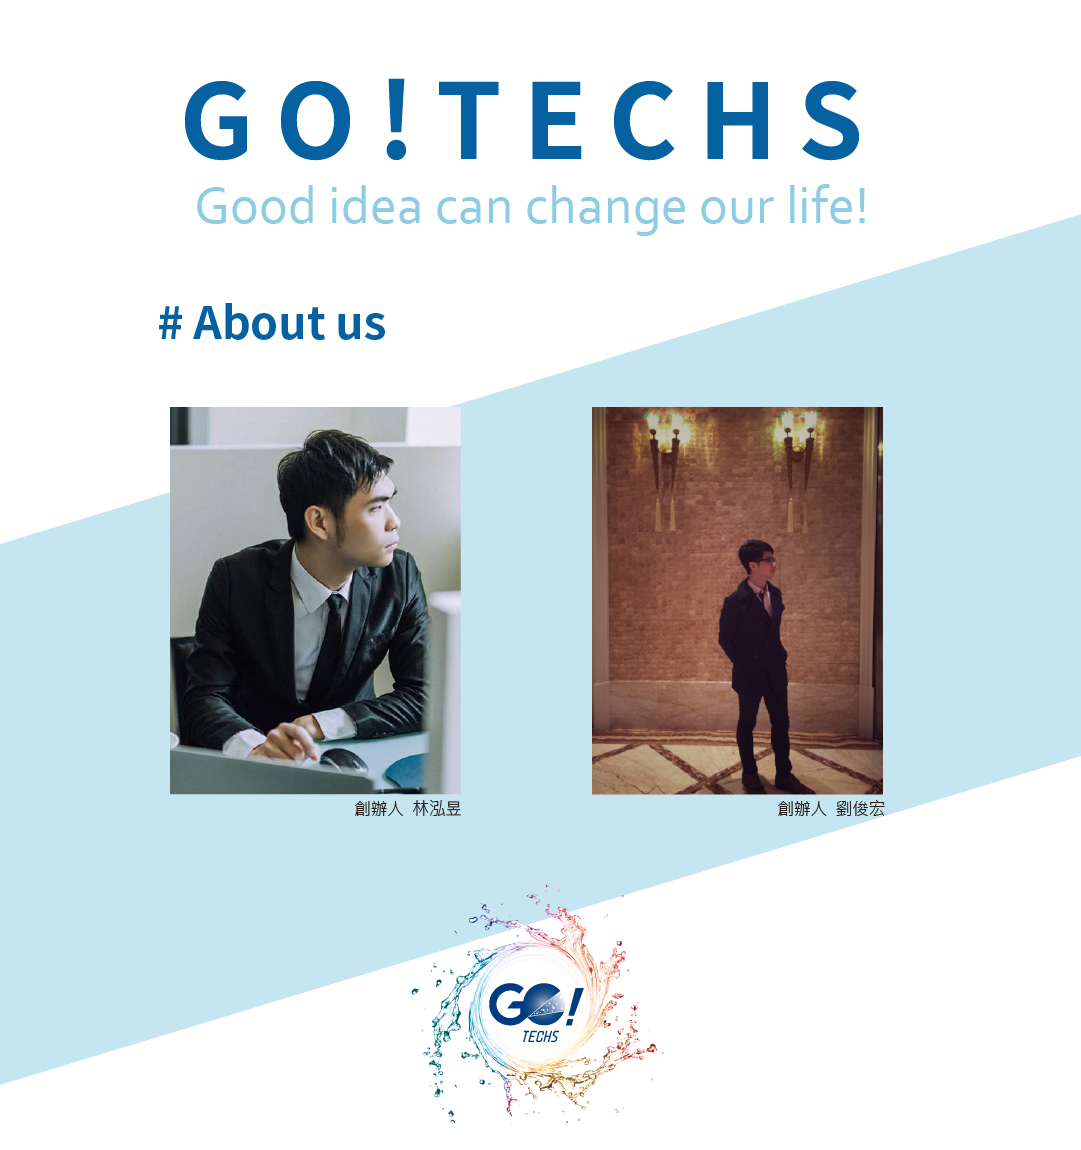 「GO!TECHS品牌初衷：科技改善生活，創意來自用心」 